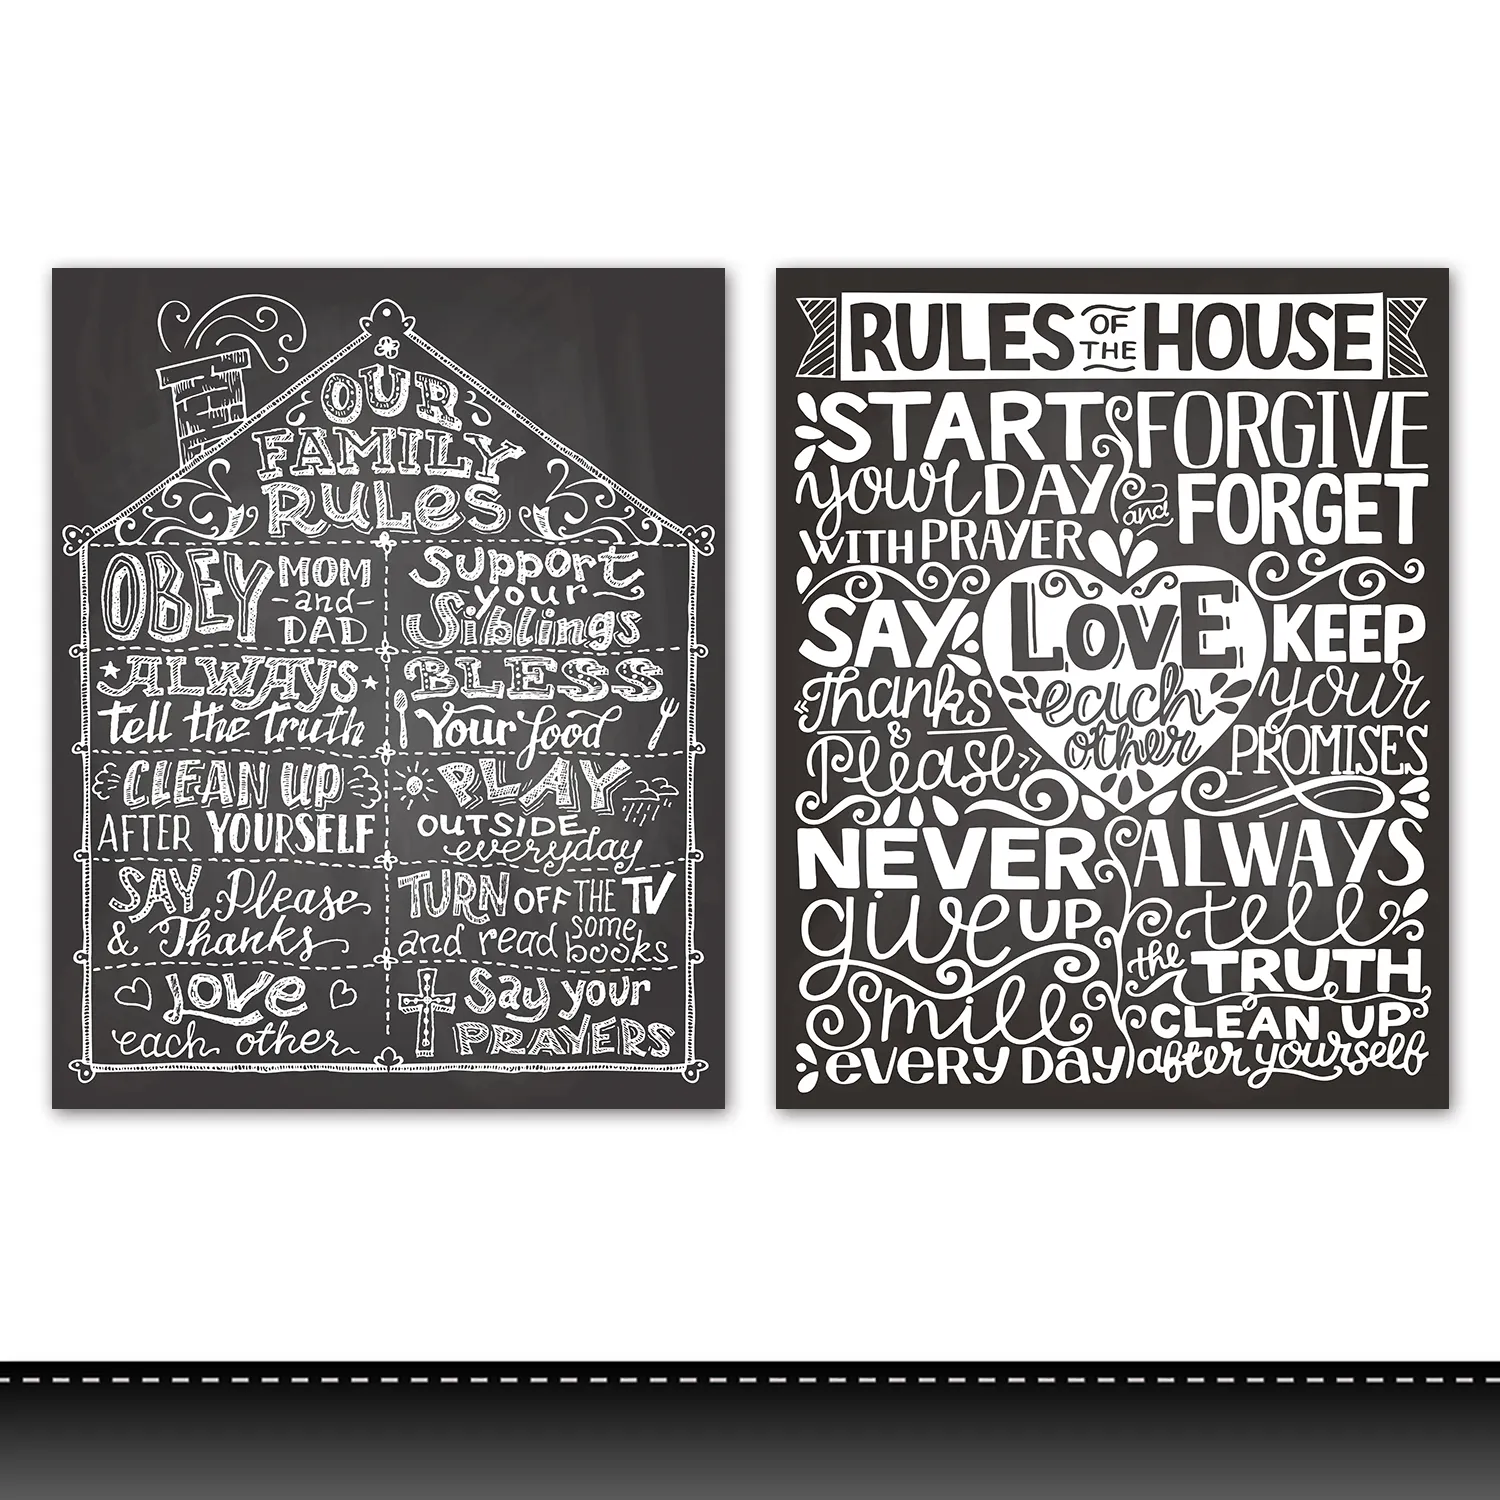 Regeln des Hauses Leinwand Malerei Motivierende Zitate Poster und Drucke Schwarz Weiß Zeichen Wand kunst Bild Druck auf Leinwand